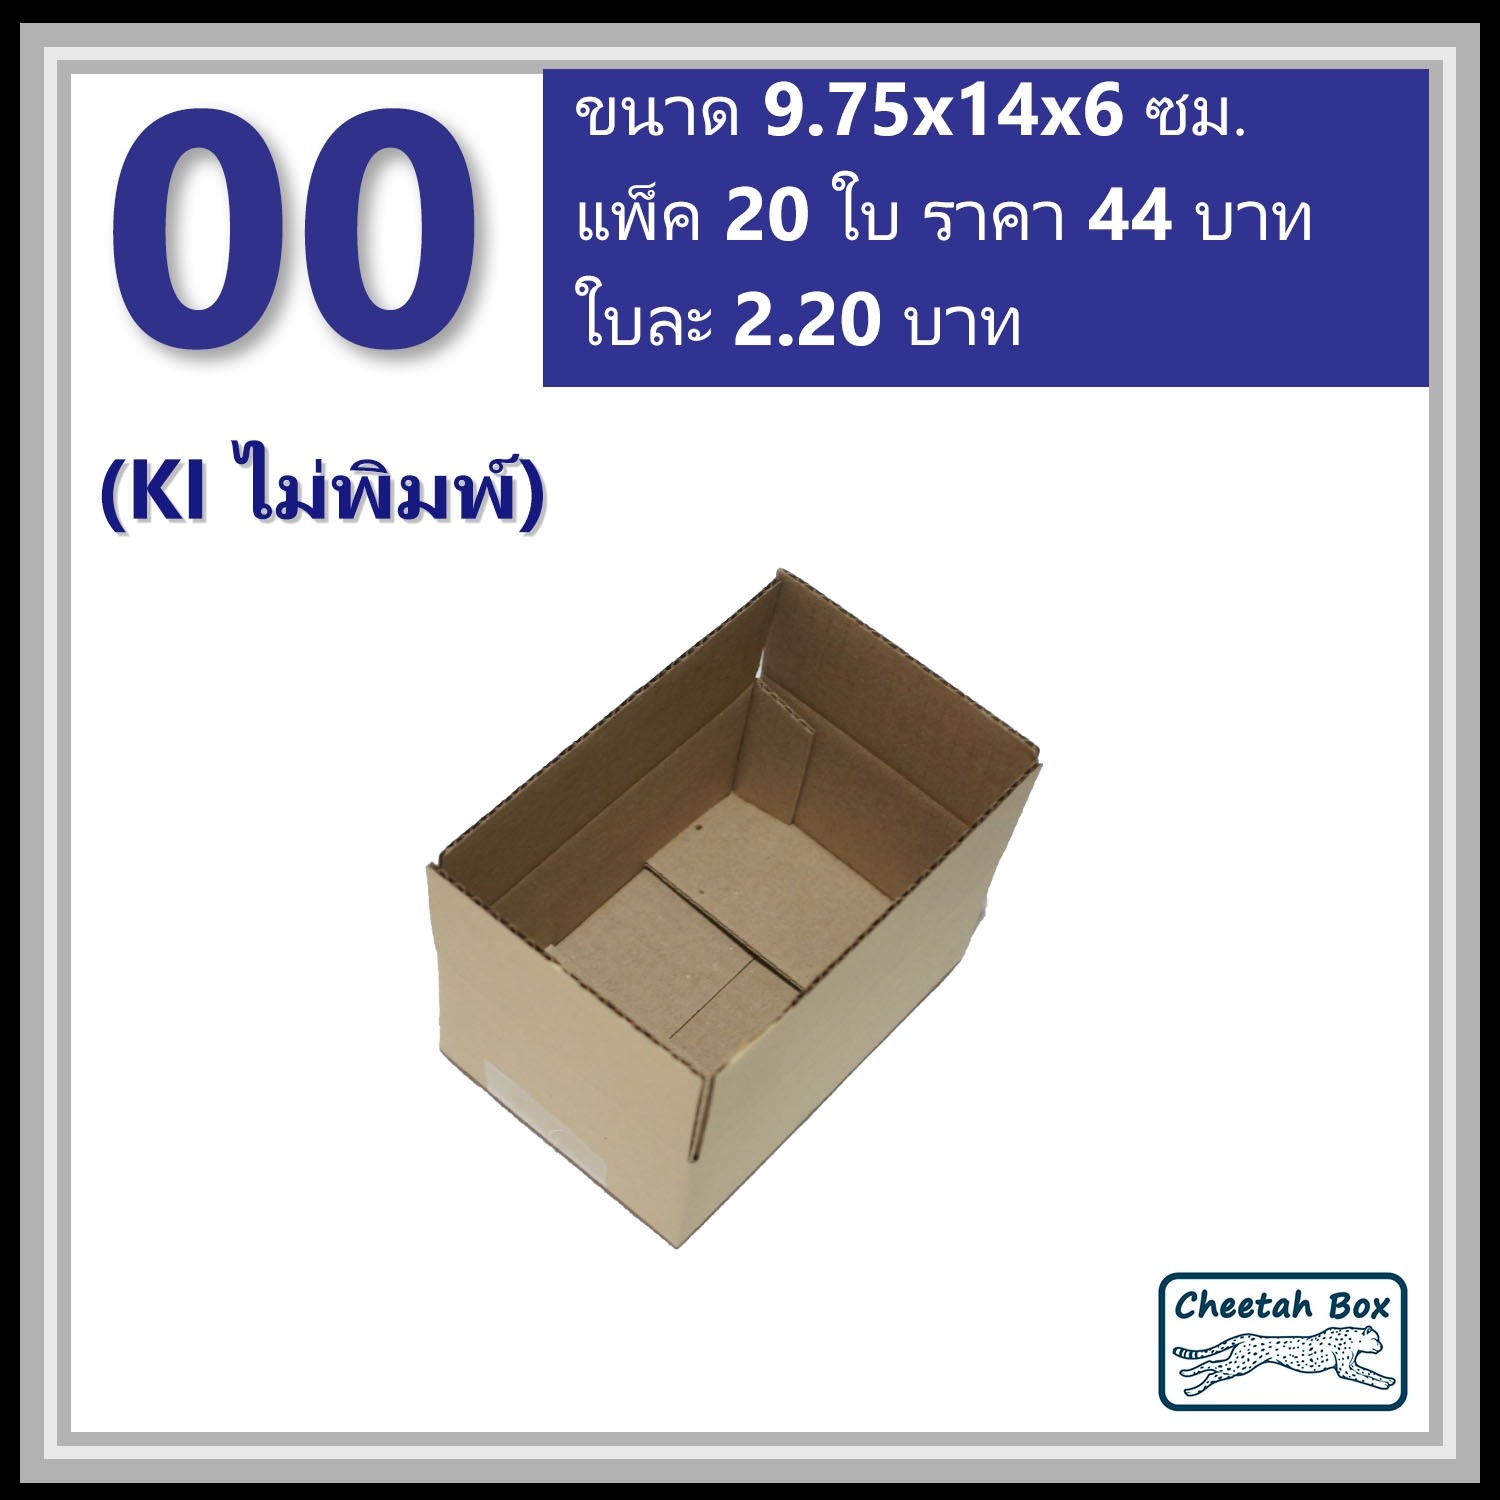 กล่องพัสดุ 00 ไม่พิมพ์ (Post Box) ลูกฟูก 3 ชั้น ขนาด 9.75W x 14L x 6H cm.